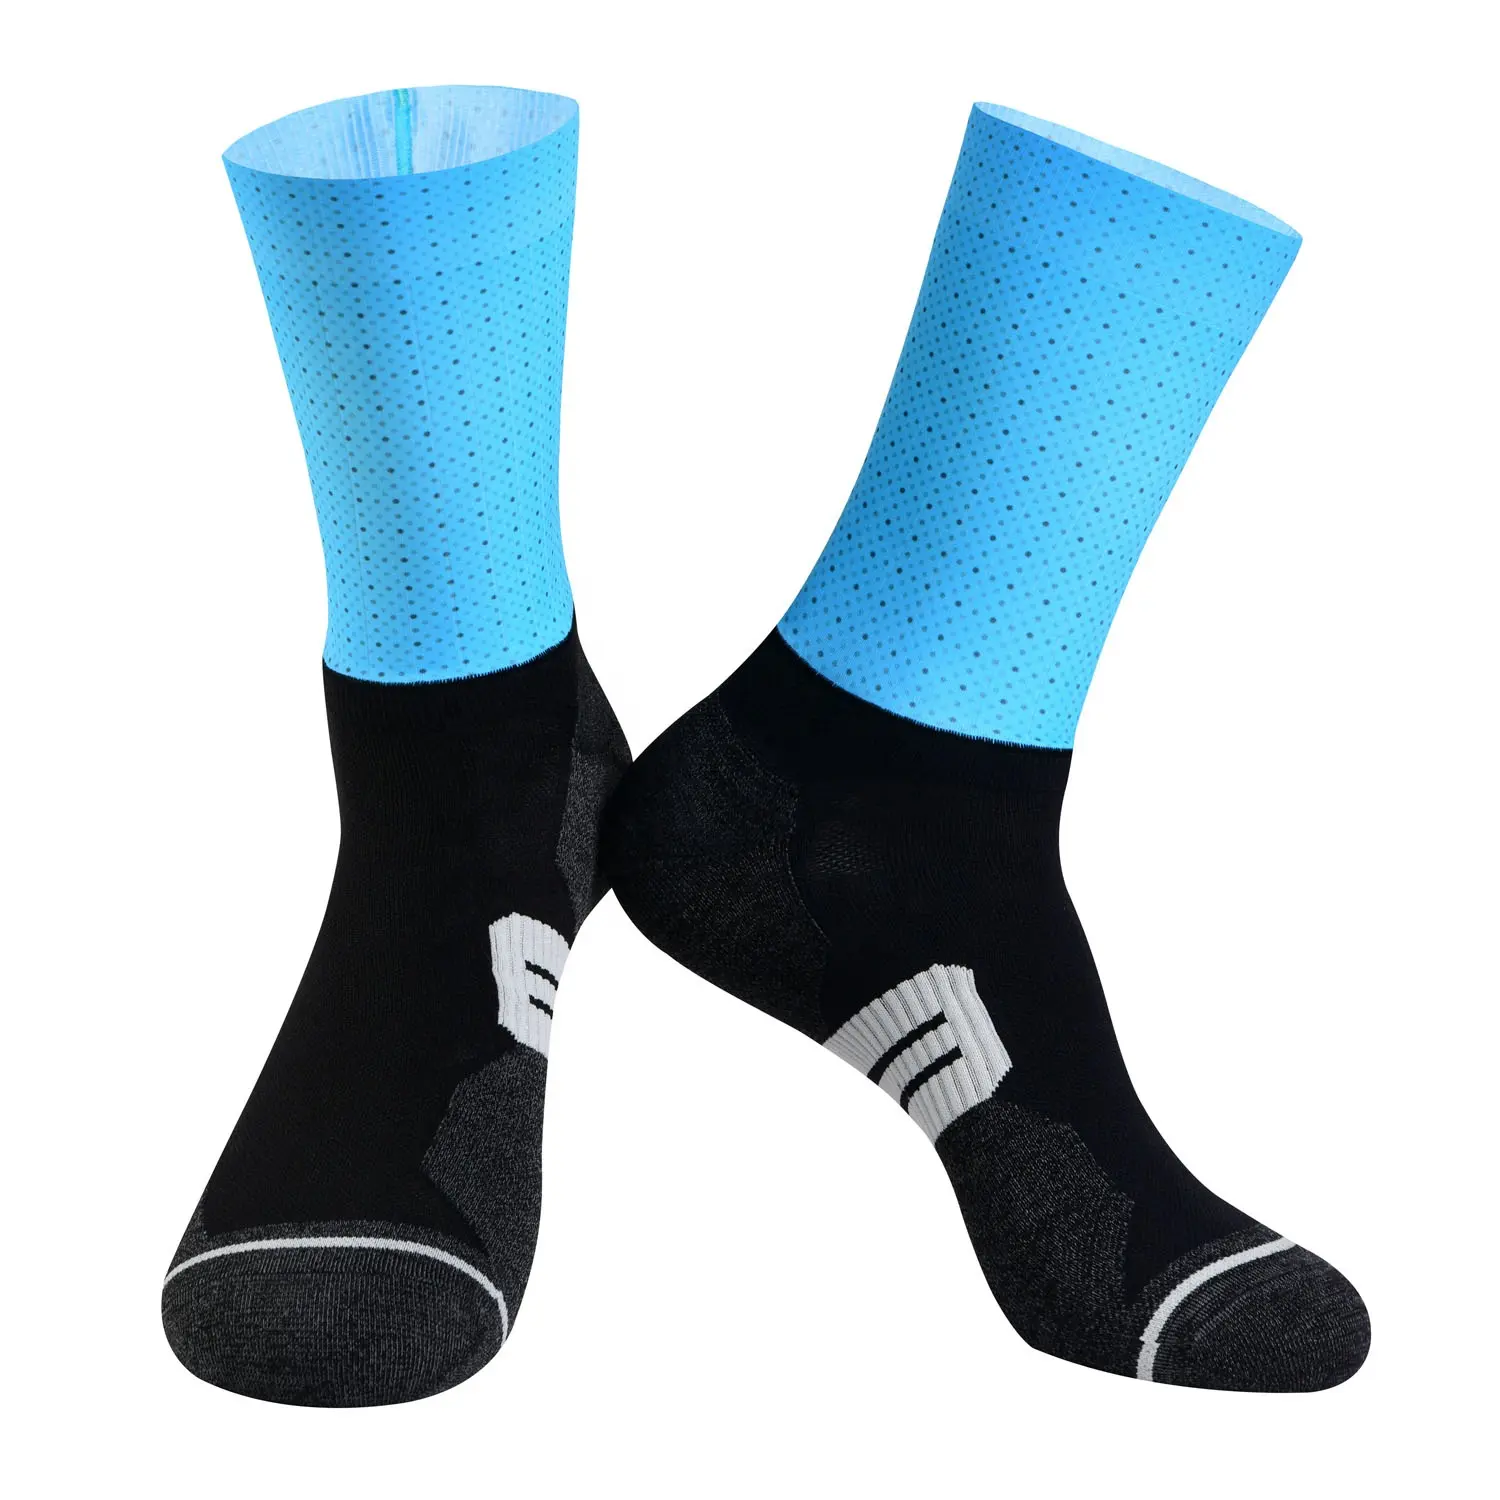 Venta al por mayor de aero calcetines transpirable anti-bacteriana Correr bicicleta deportes calcetines con coolmax único